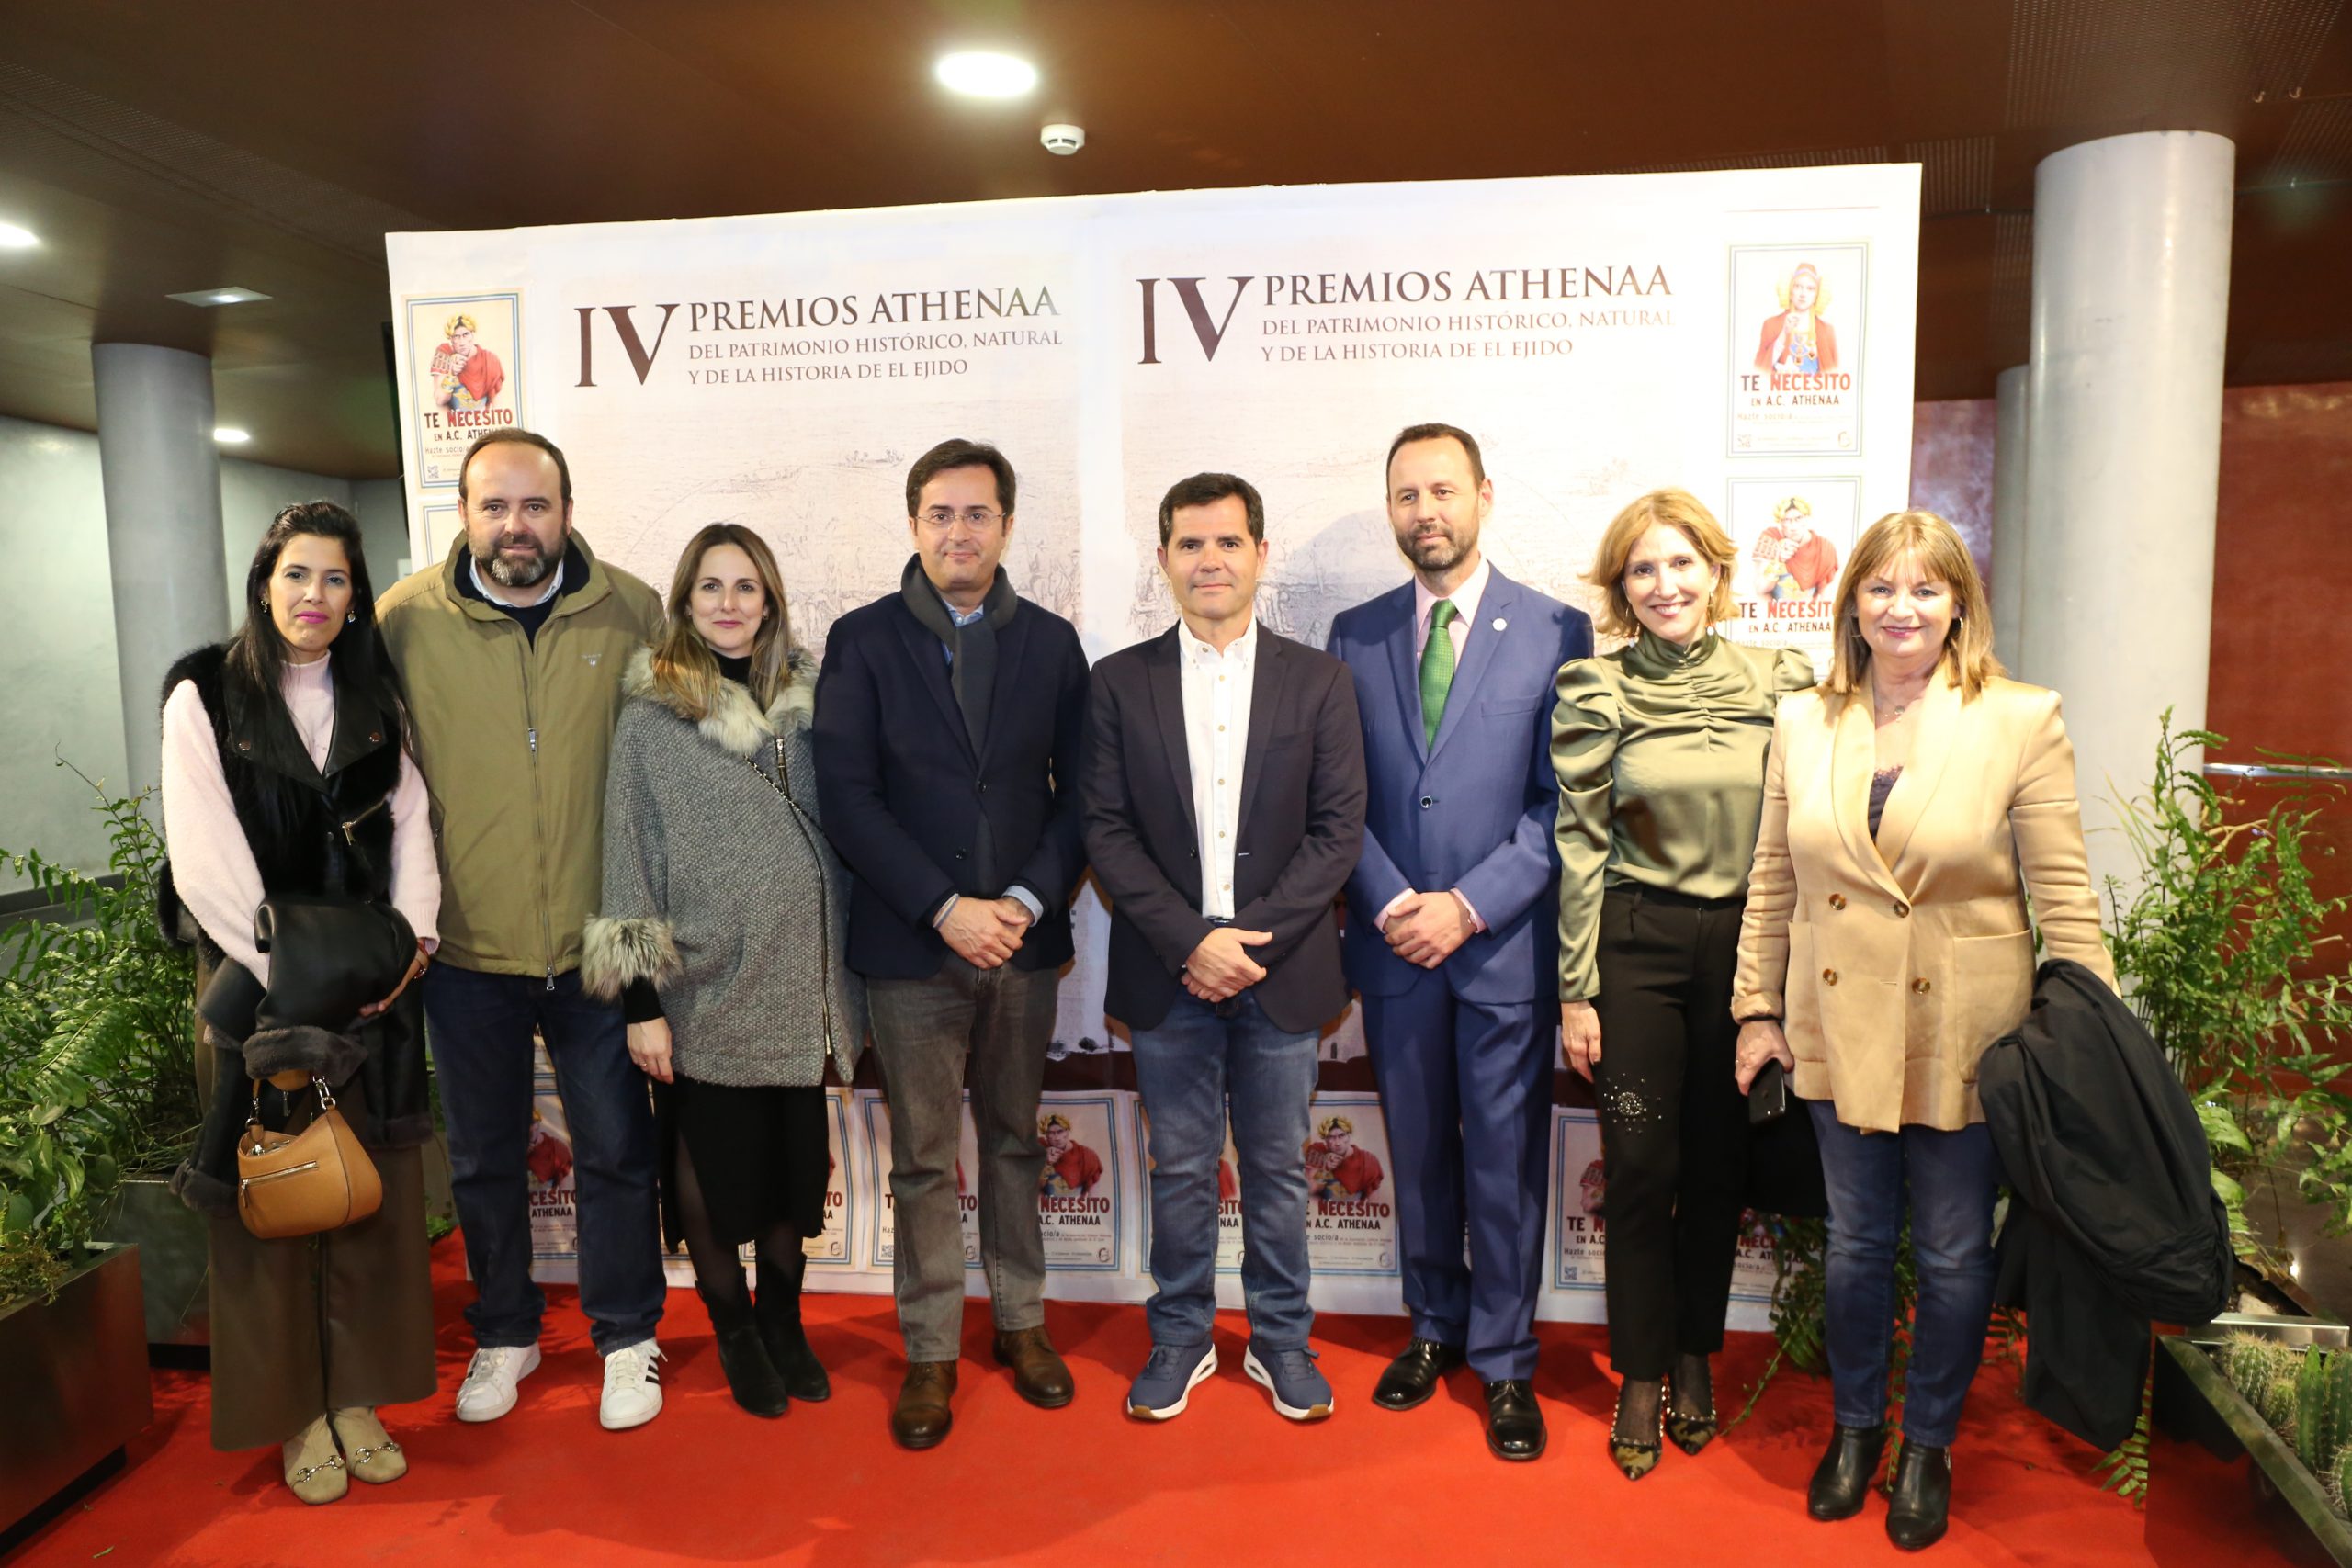 El Teatro Auditorio acoge los IV Premios Athenaa en el marco de la celebración de su 25º aniversario